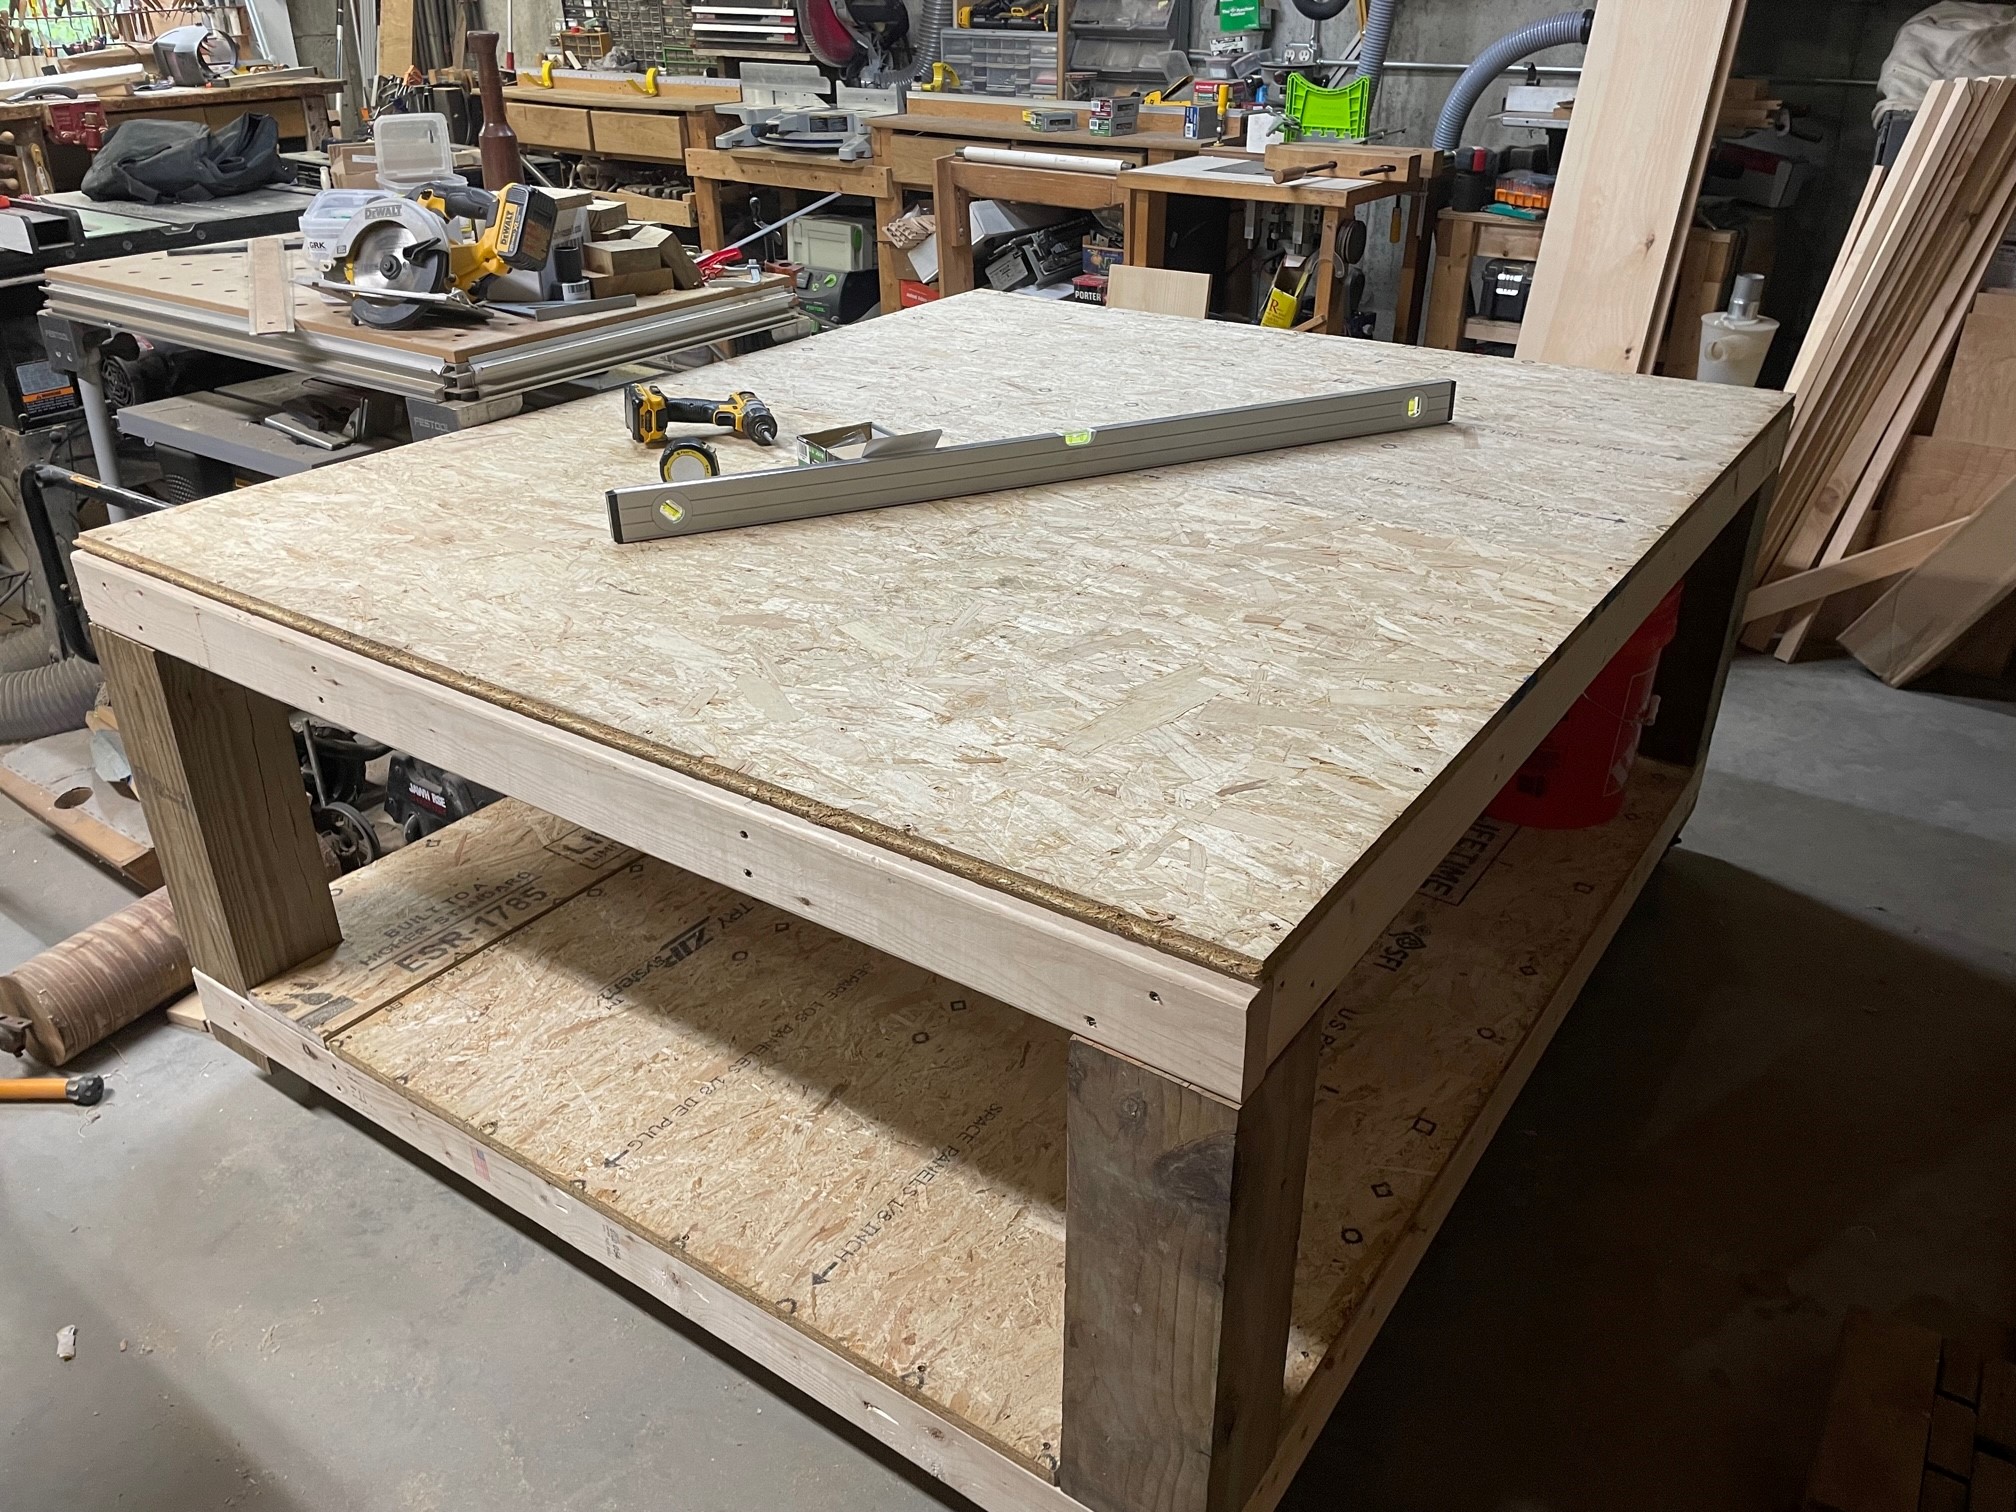 Shop-built CNC table